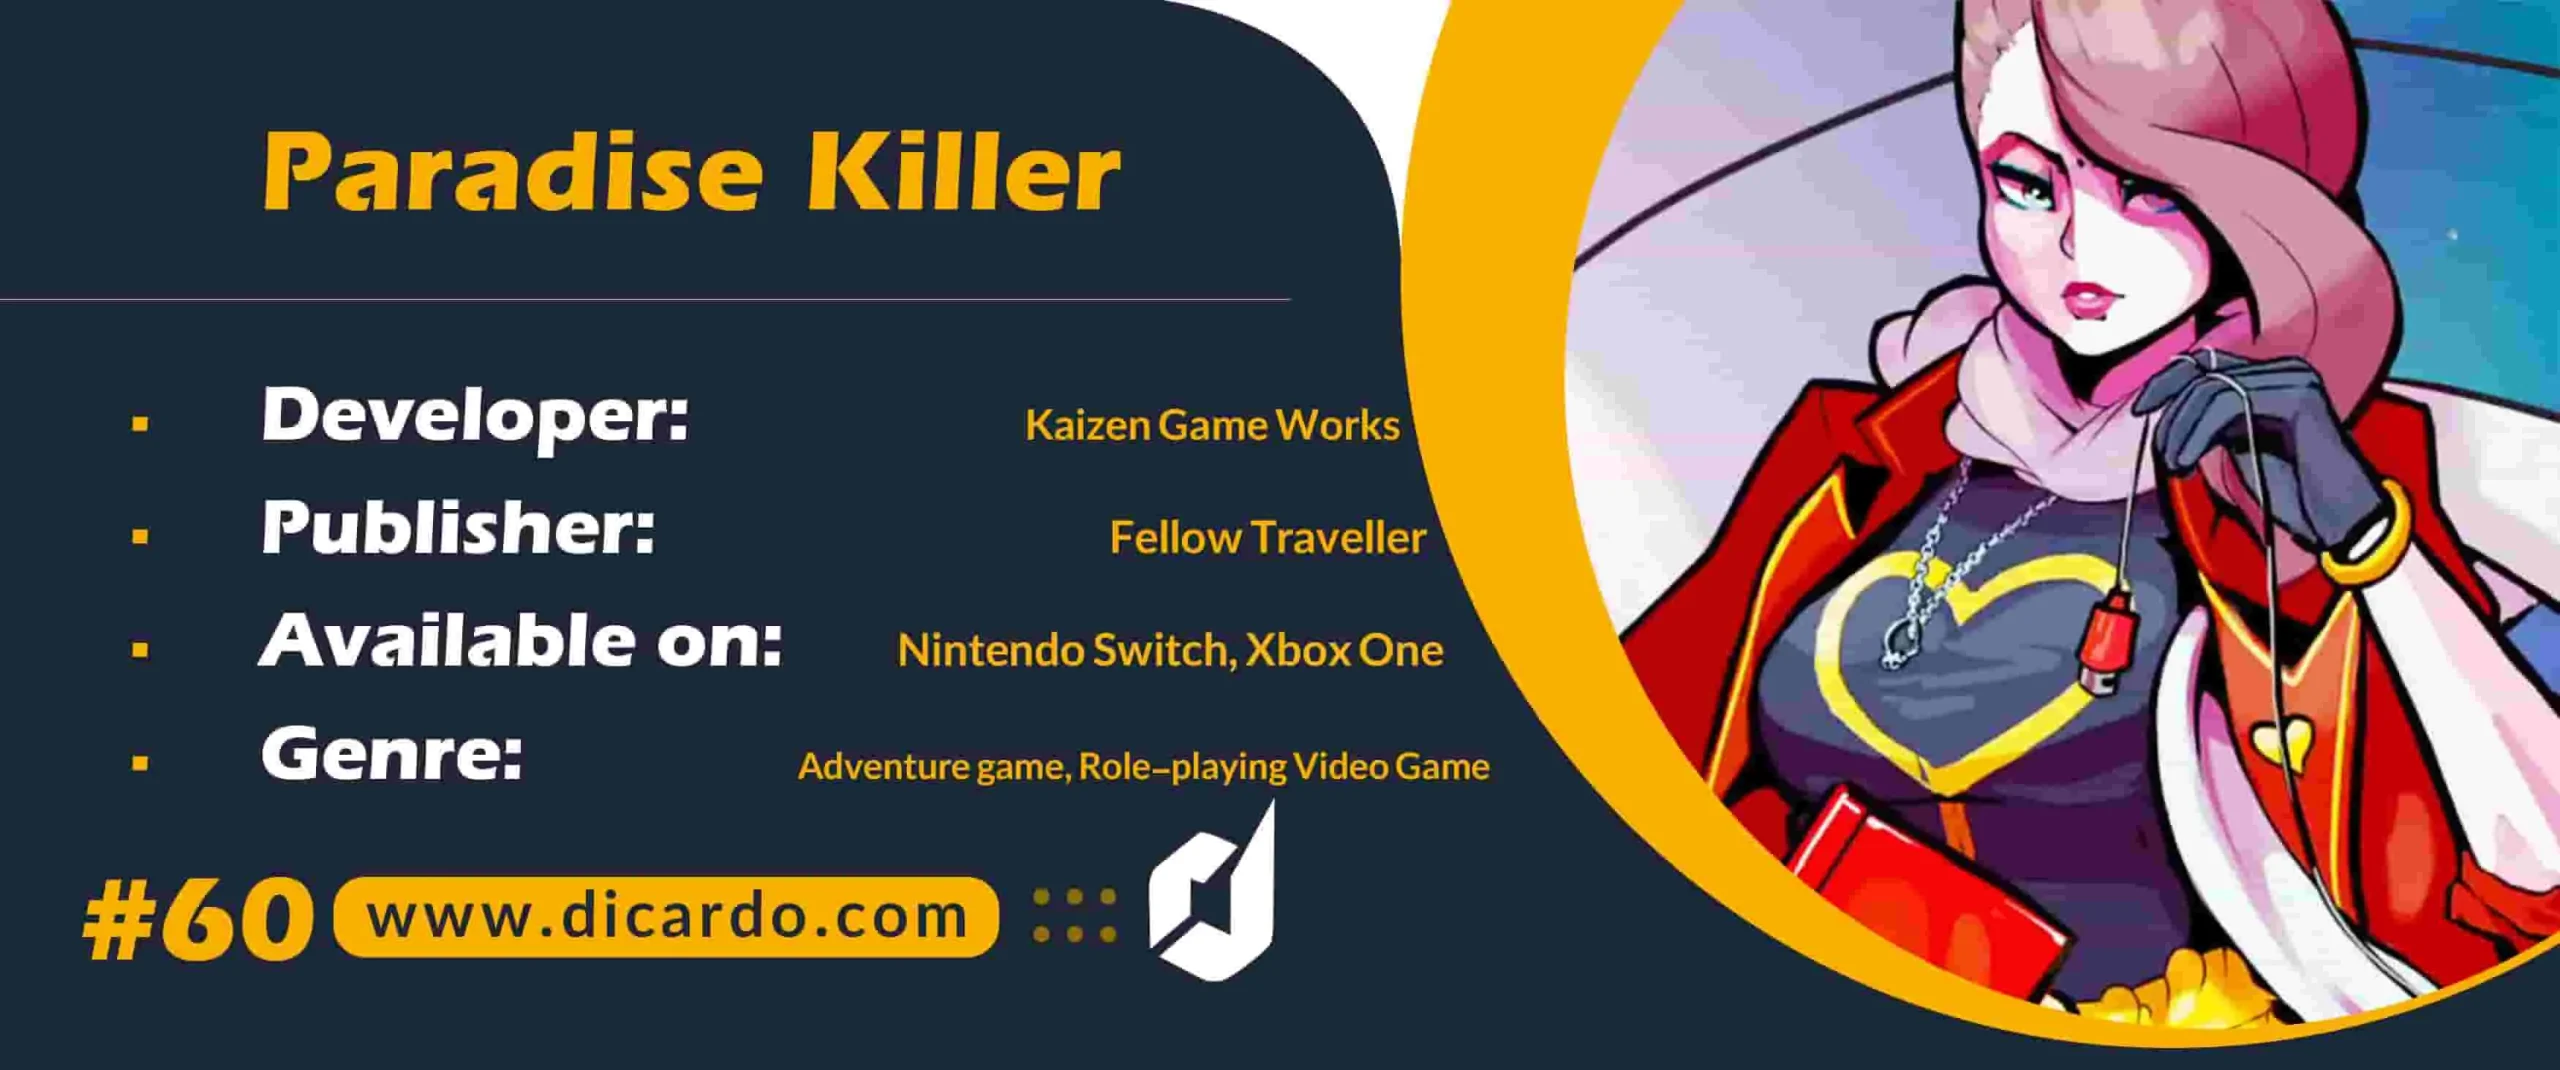 #60 پارادیس کیلر Paradise Killer یکی دیگر از برترین بازیهای کامپیوتری